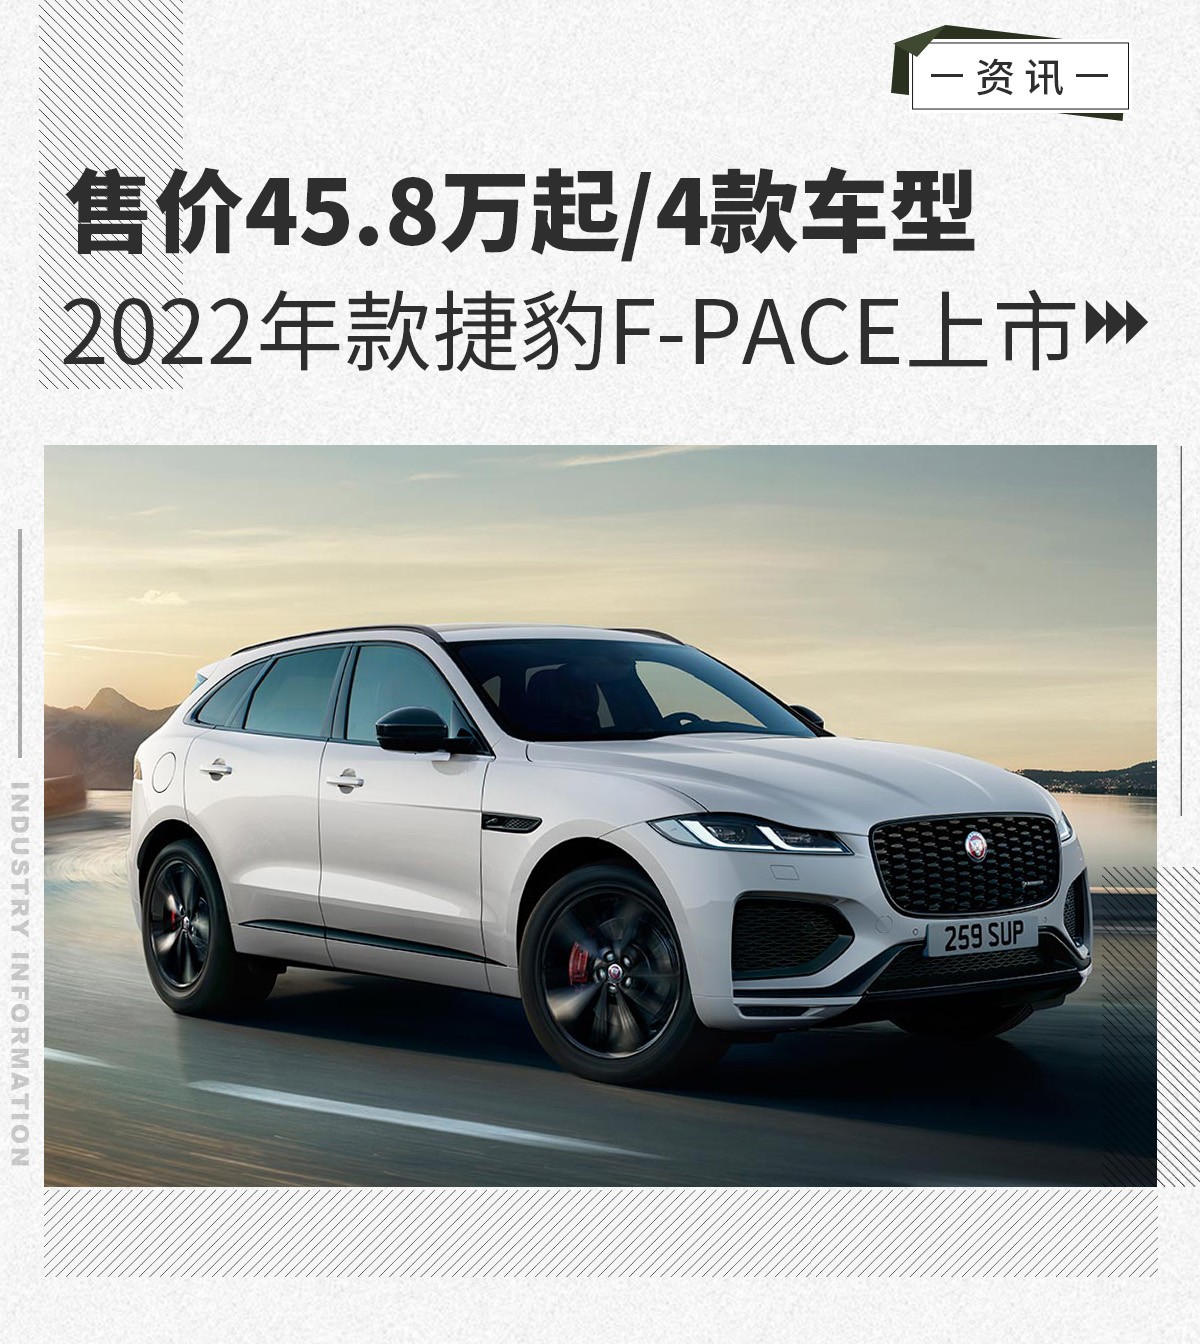 2022年款捷豹F-PACE上市 售价45.8万起/4款车型